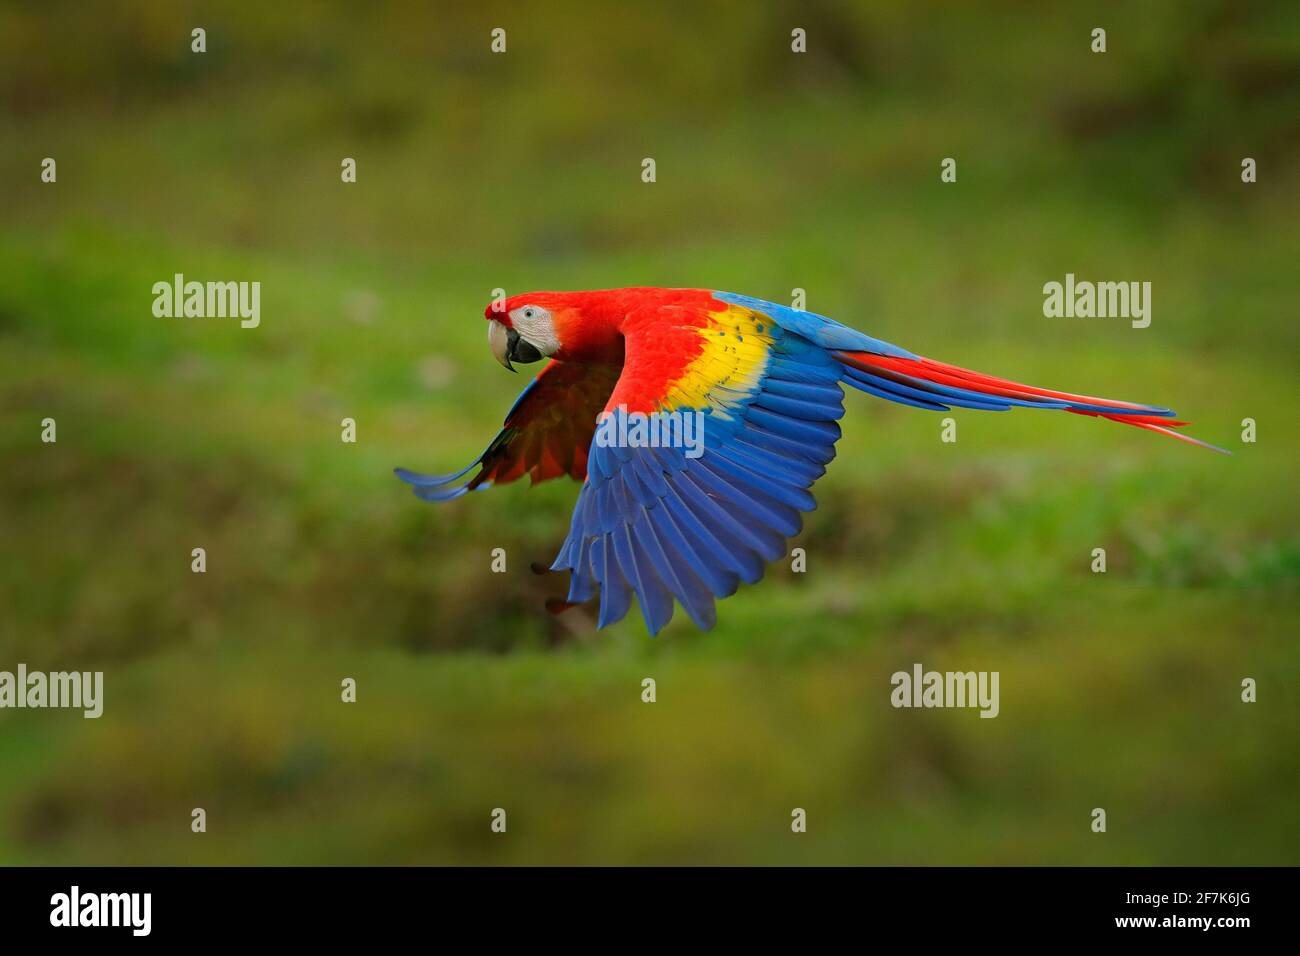 Perroquet rouge en forêt. Perroquet de la macaw volant dans une végétation vert foncé. Scarlet Macaw, Ara macao, en forêt tropicale, Costa Rica. Scène de la vie sauvage de Trop Banque D'Images